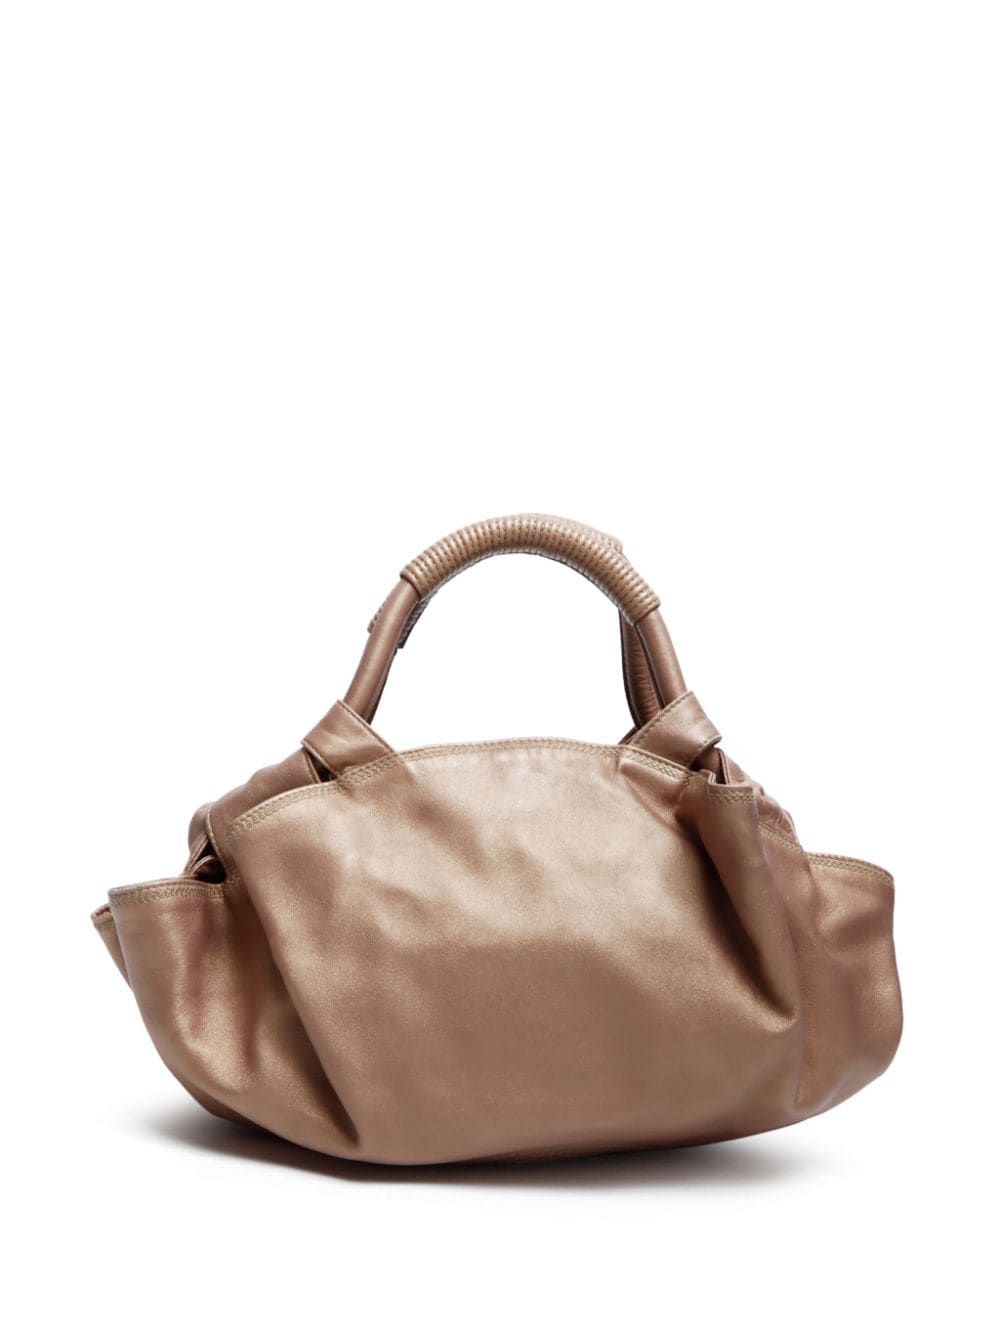 Loewe Pre-Owned Aire leather handbag - Beige